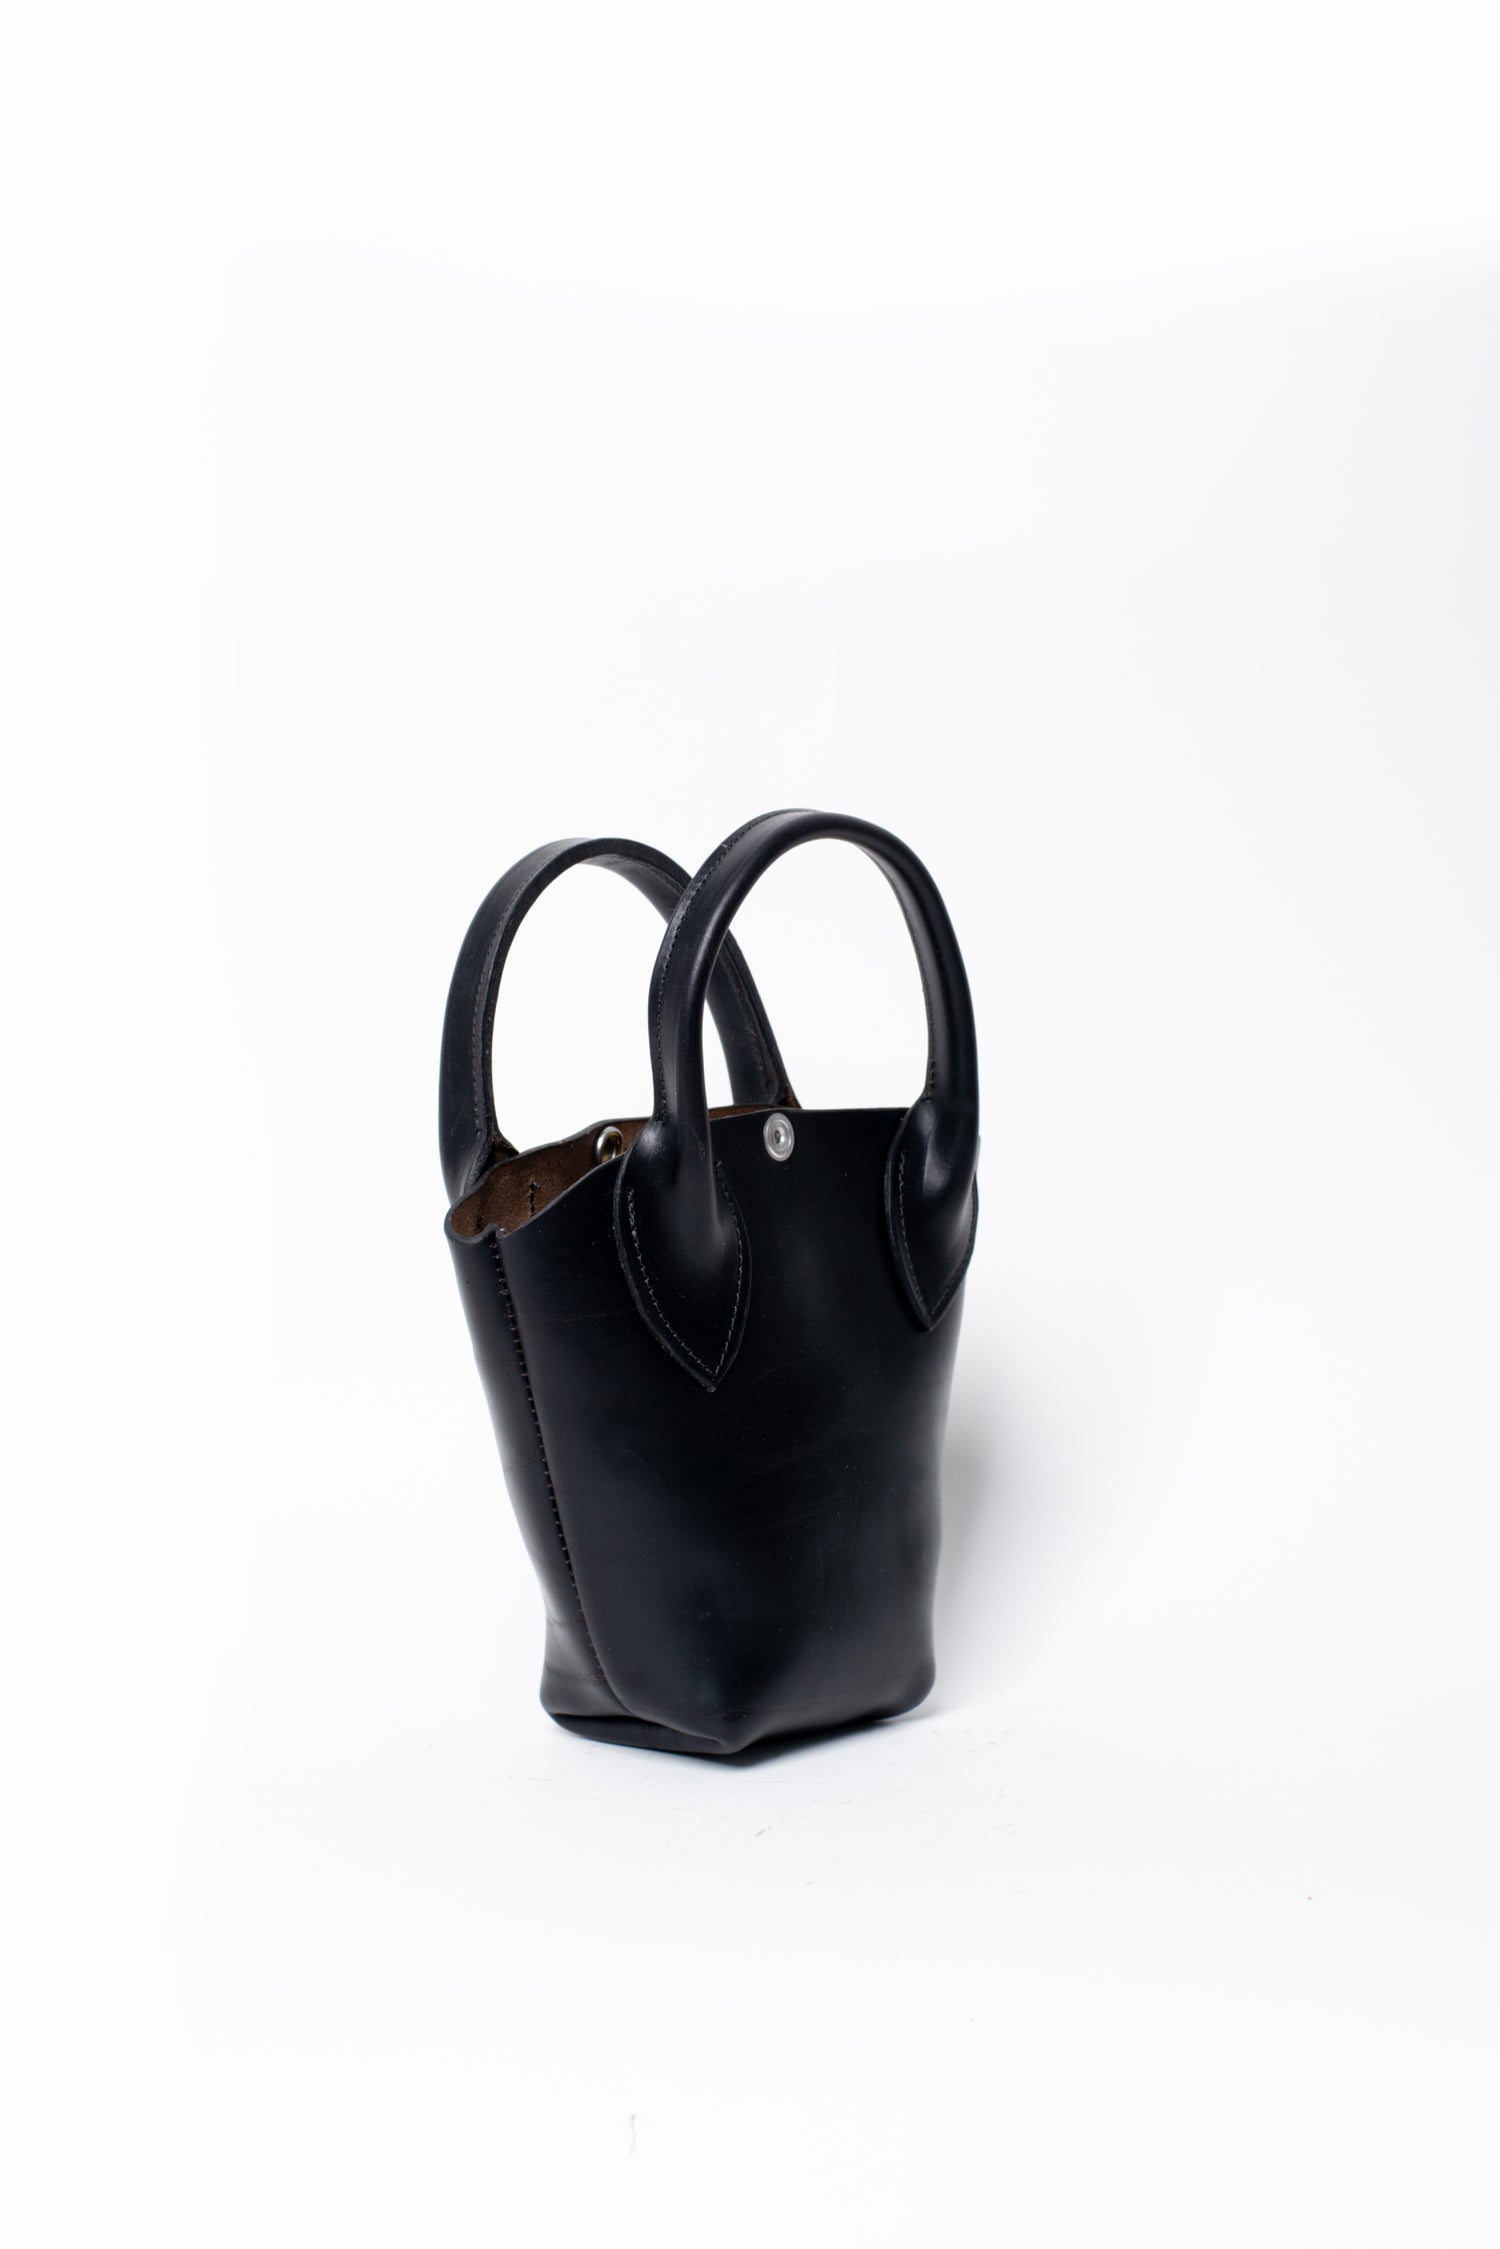 I Love NY Baby Bag ~ Black